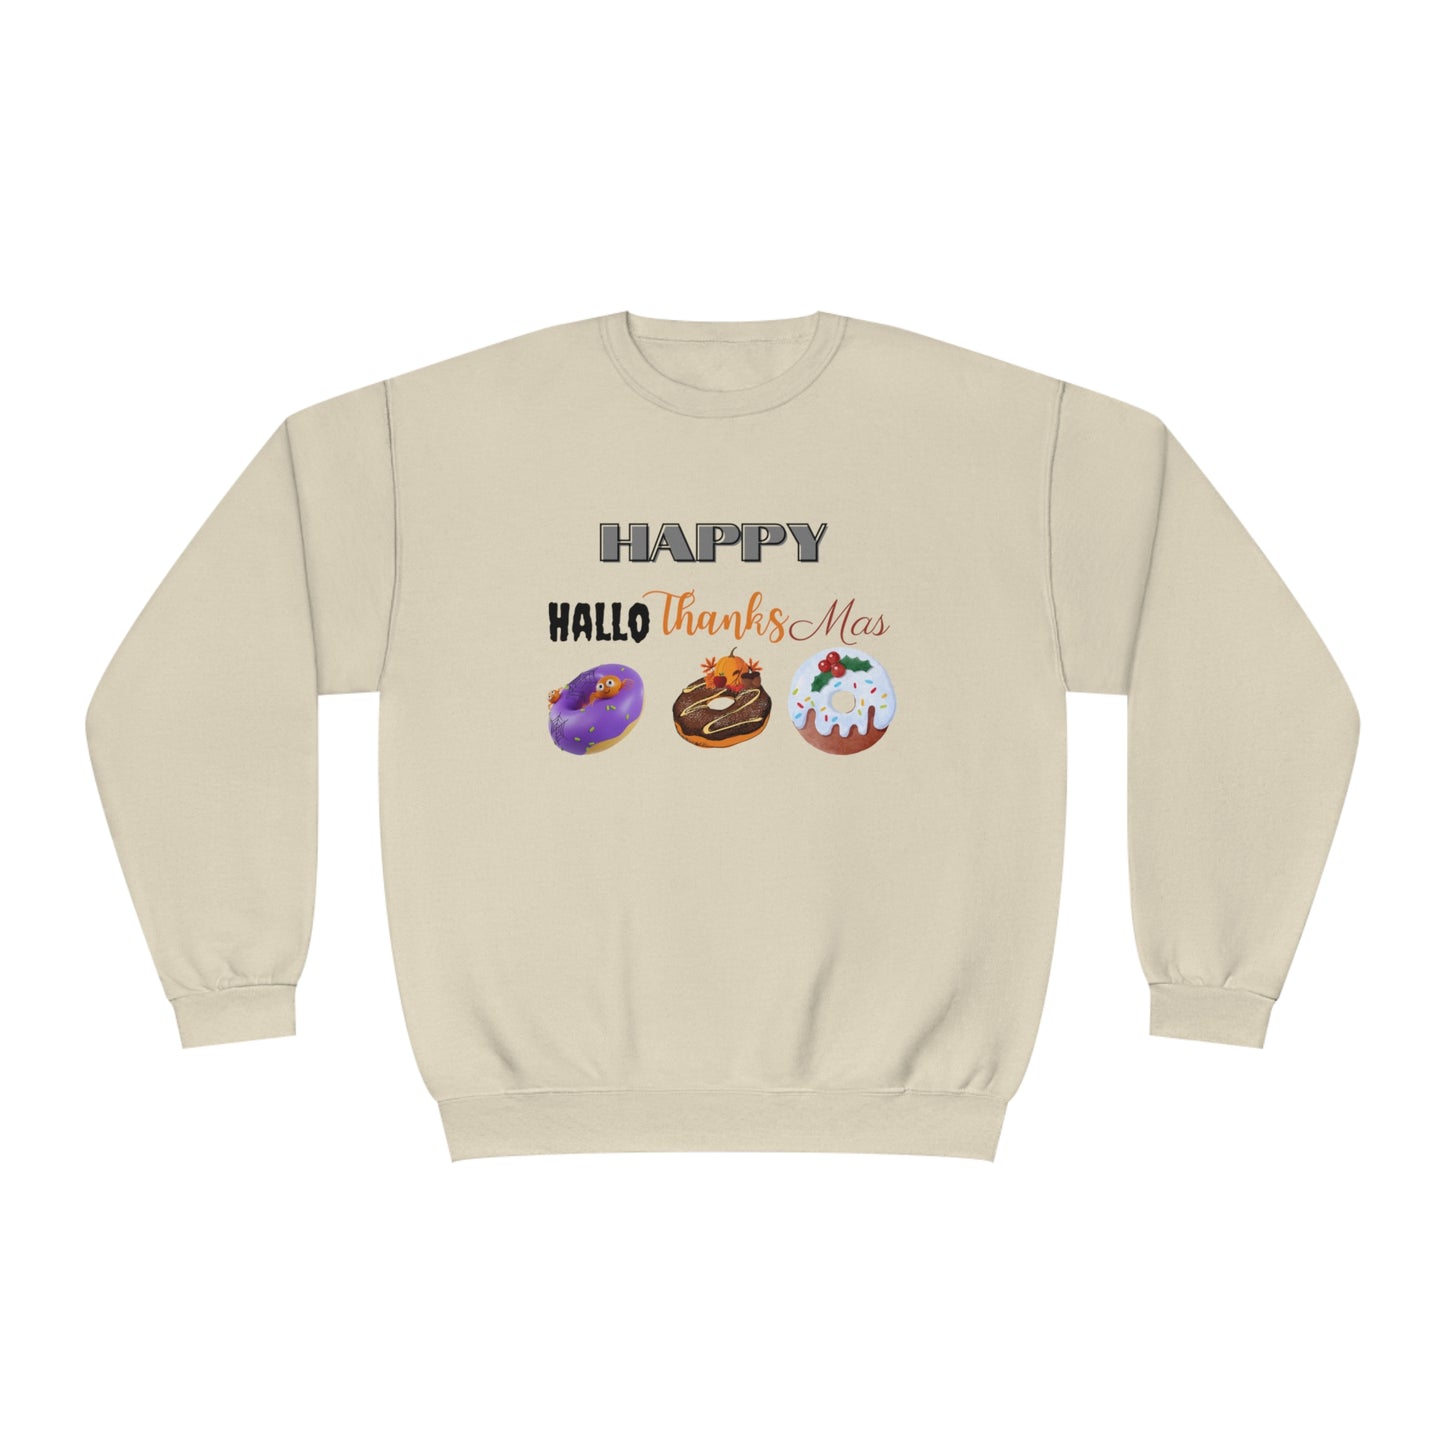 Happy HalloThanksMas Sweatshirt